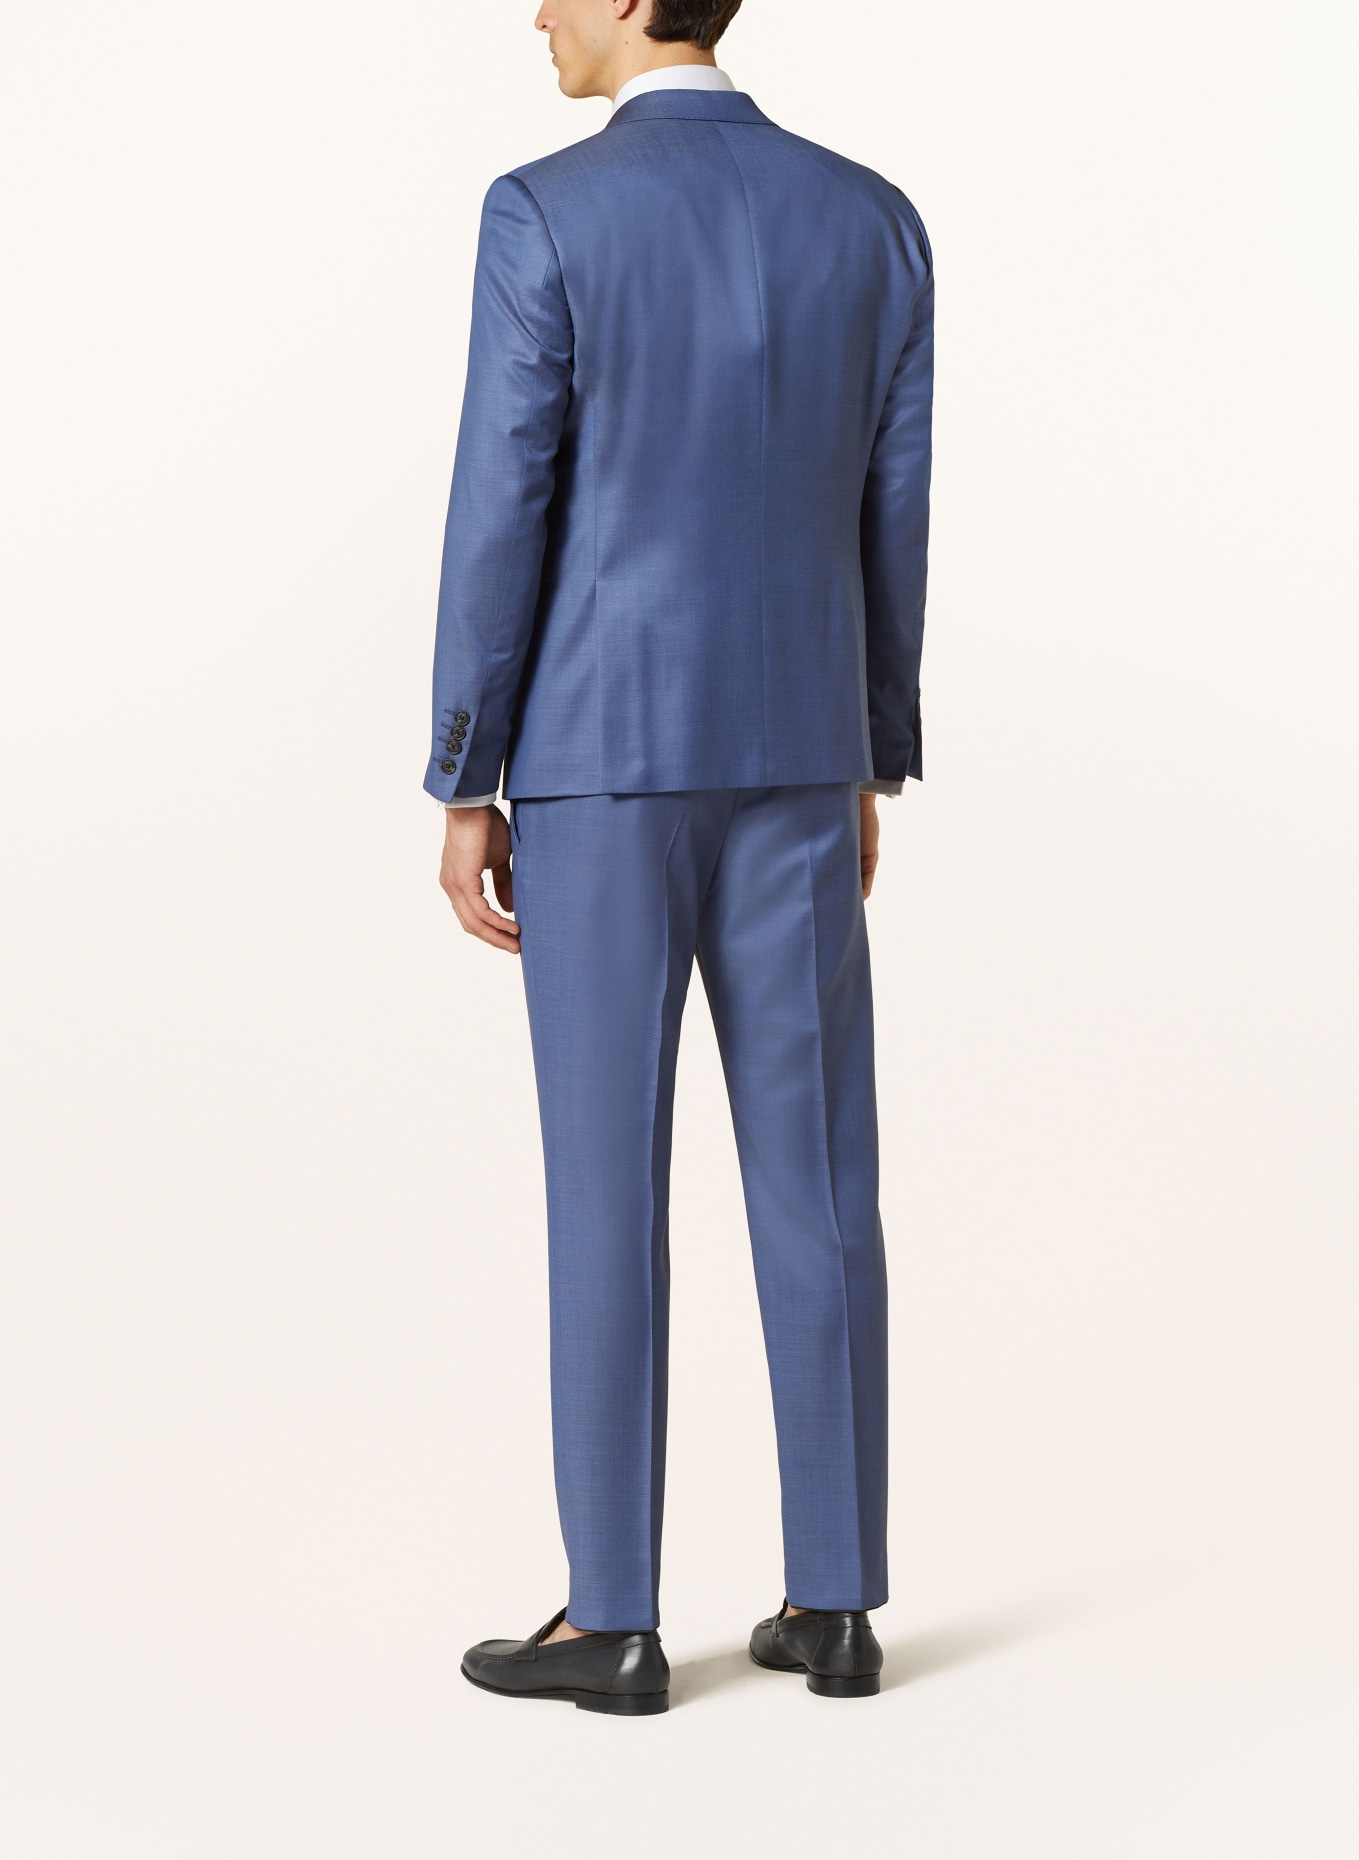 JOOP! Suit HERBY slim fit, Color: 410 Navy                       410 (Image 3)